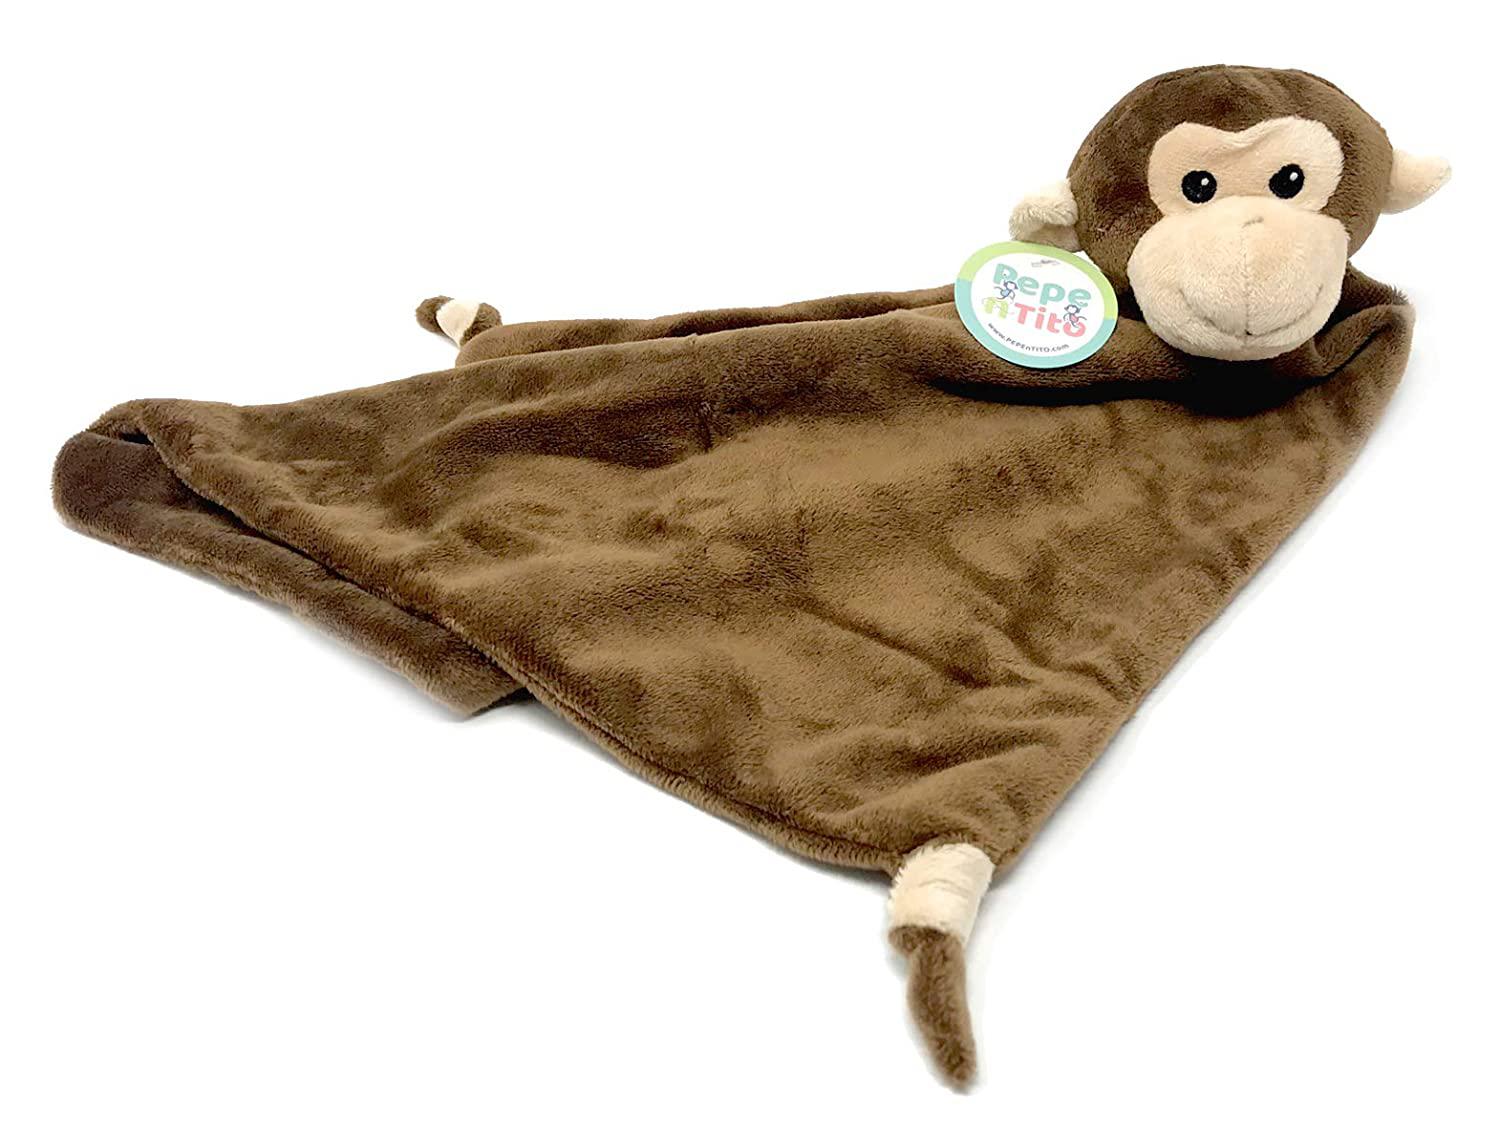 Baby Blanket And Stuffed Animal Set